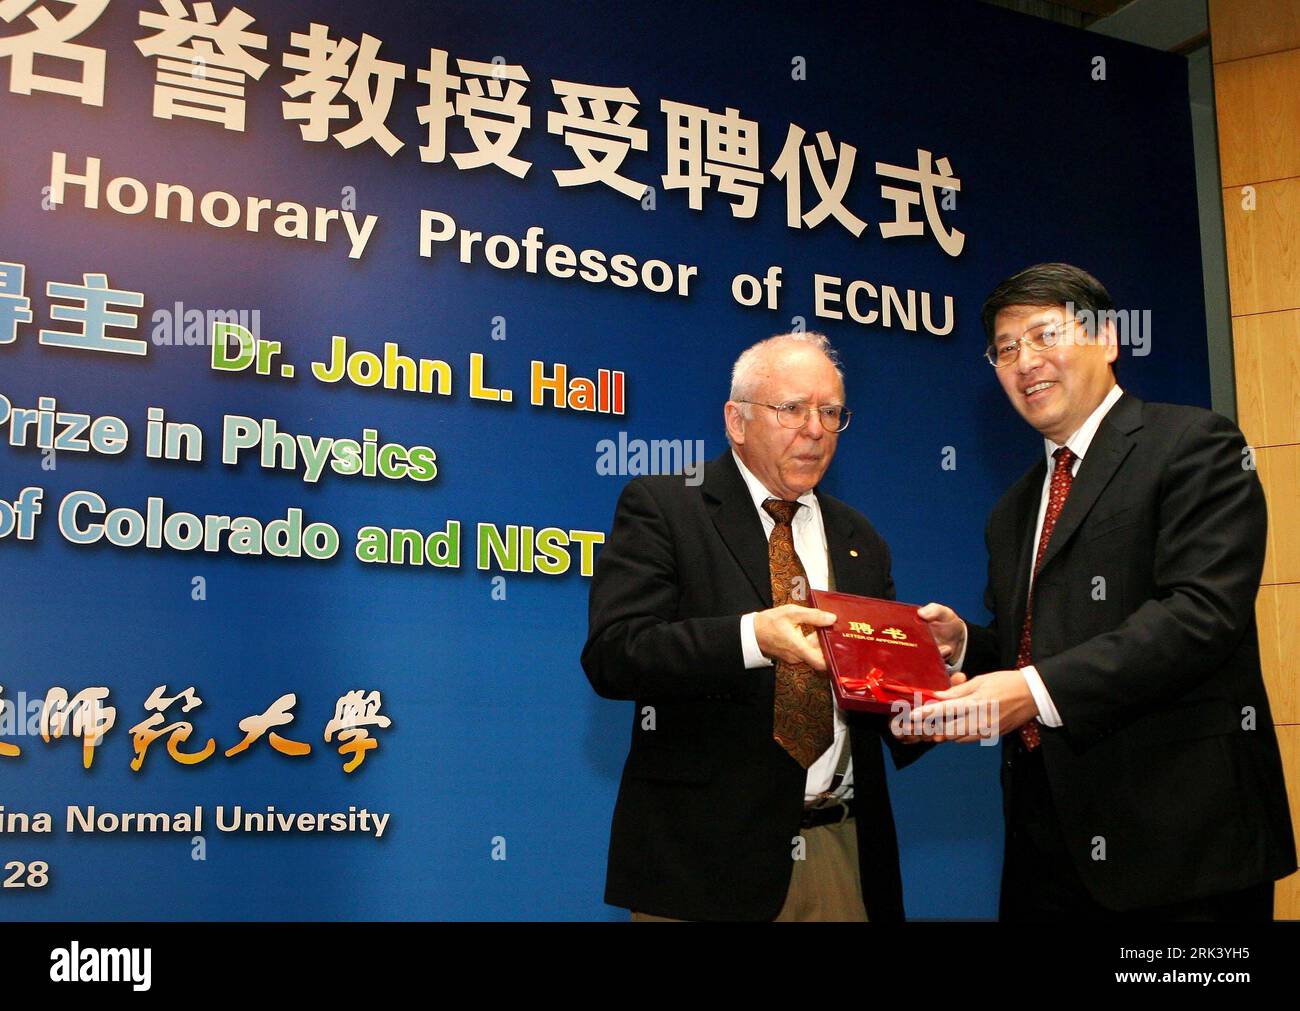 Bildnummer : 53560496 Datum : 28.10.2009 Copyright : imago/Xinhua (091028) -- SHANGHAI, 28 octobre 2009 (Xinhua) -- Yu Lizhong (R), président de l'Université normale de Chine orientale, présente la lettre de nomination au scientifique américain John L. Hall, lauréat du prix Nobel de physique 2005, à Shanghai, dans l'est de la Chine, le 28 octobre 2009. L'université située à Shanghai a conféré mercredi le Dr John L. Hall au professeur honoraire. (Xinhua/Liu Ying) (wjd) (1)CHINA-SHANGHAI-ECNU-JOHN L.HALL-PROFESSEUR HONORAIRE (CN) PUBLICATIONxNOTxINxCHN People kbdig xsk 2009 quer Bildnummer 53560496 Date 28 10 2009 Banque D'Images